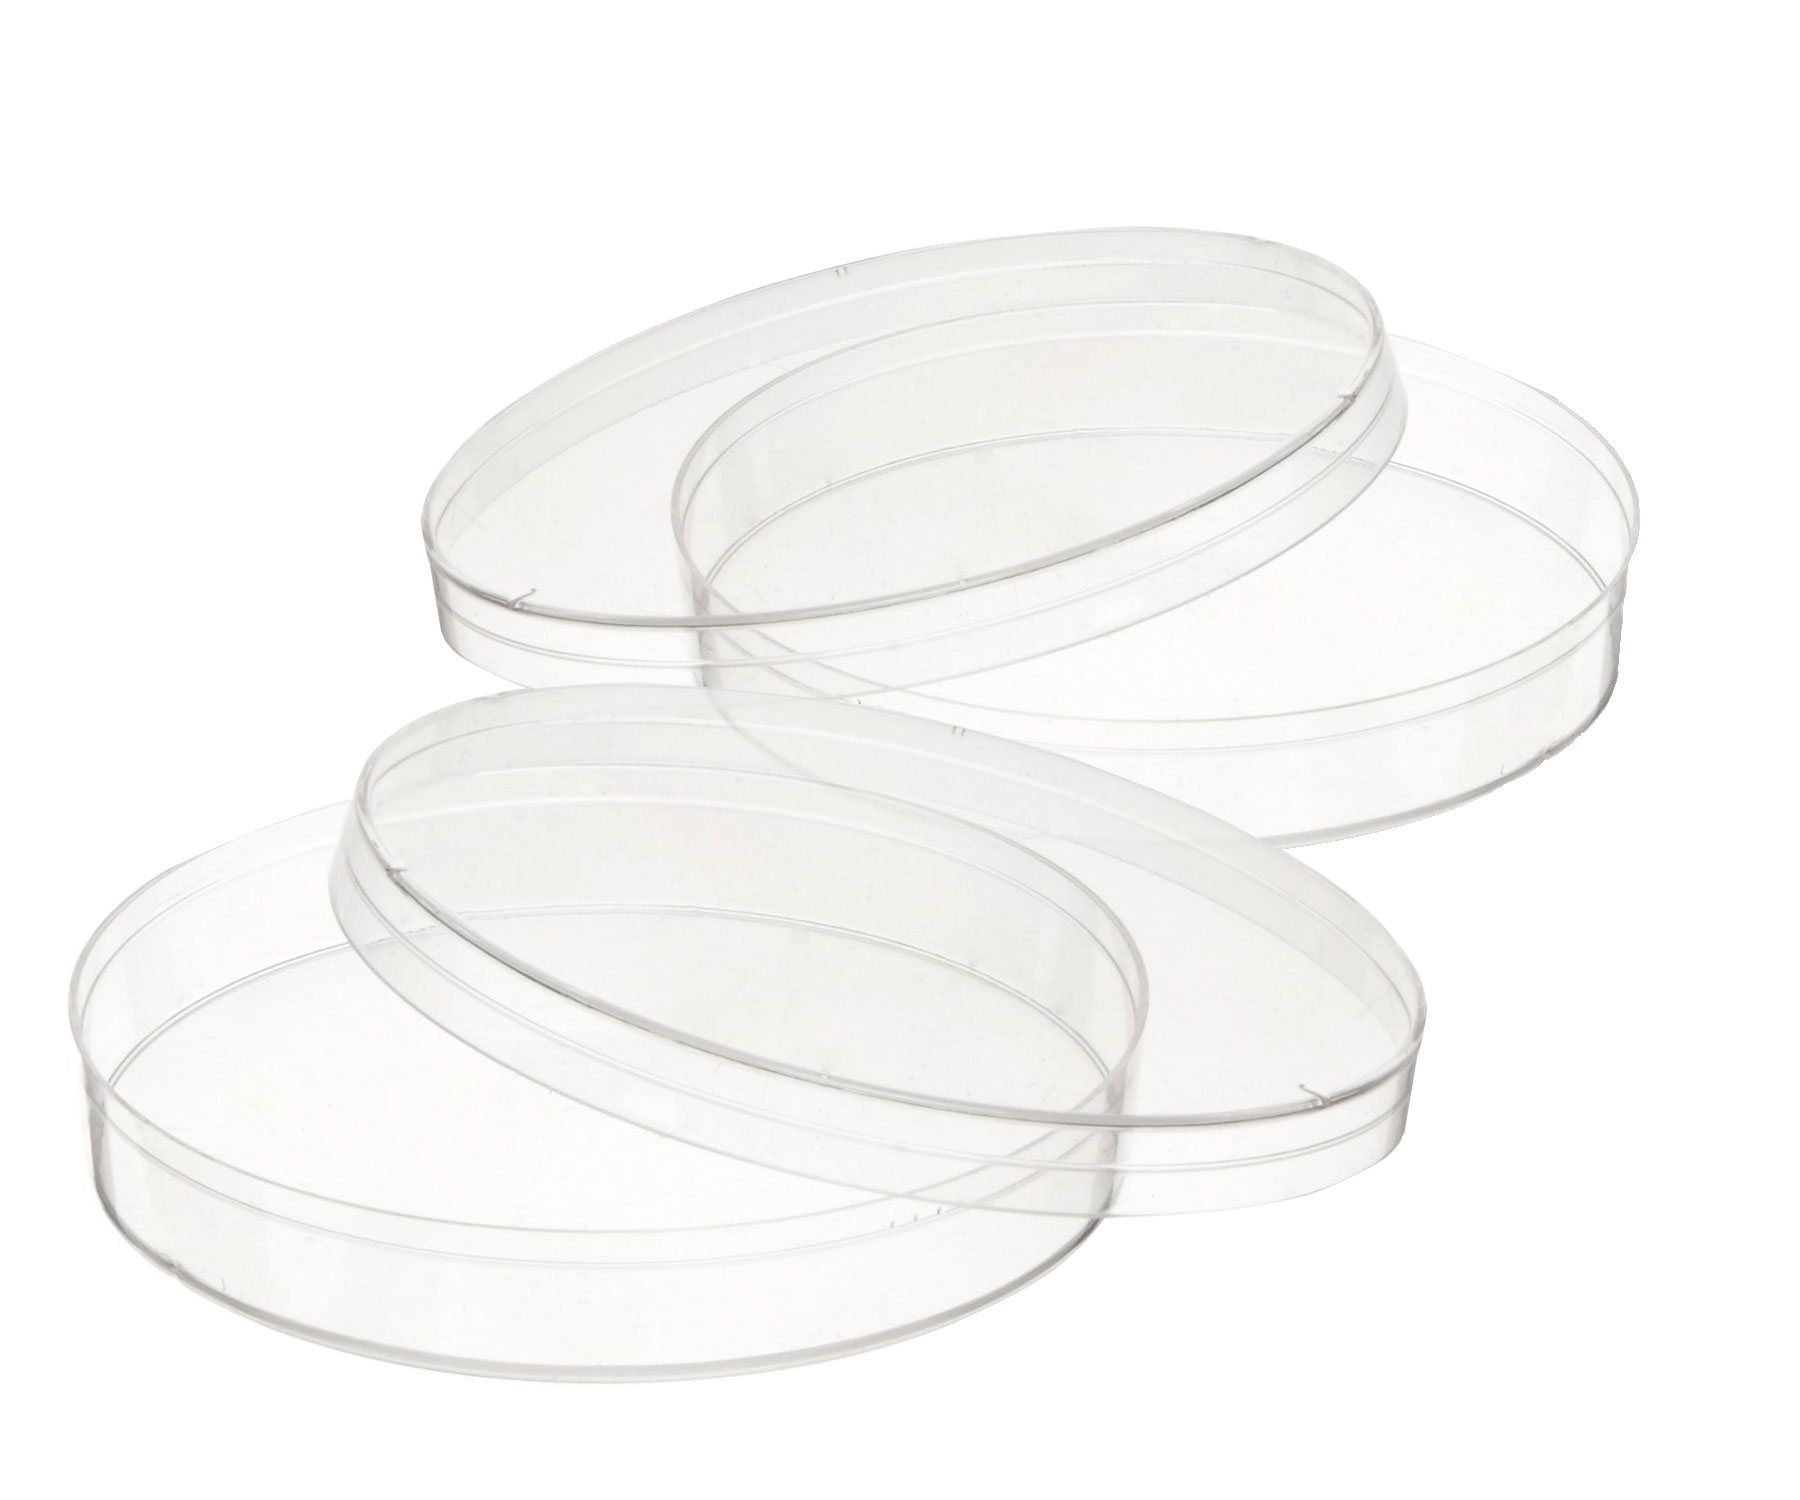  Patri Dishes - Juego de platos desechables esterilizados (1.2  in x 3.5 in, con tapas, pipetas, 10 unidades) : Industrial y Científico